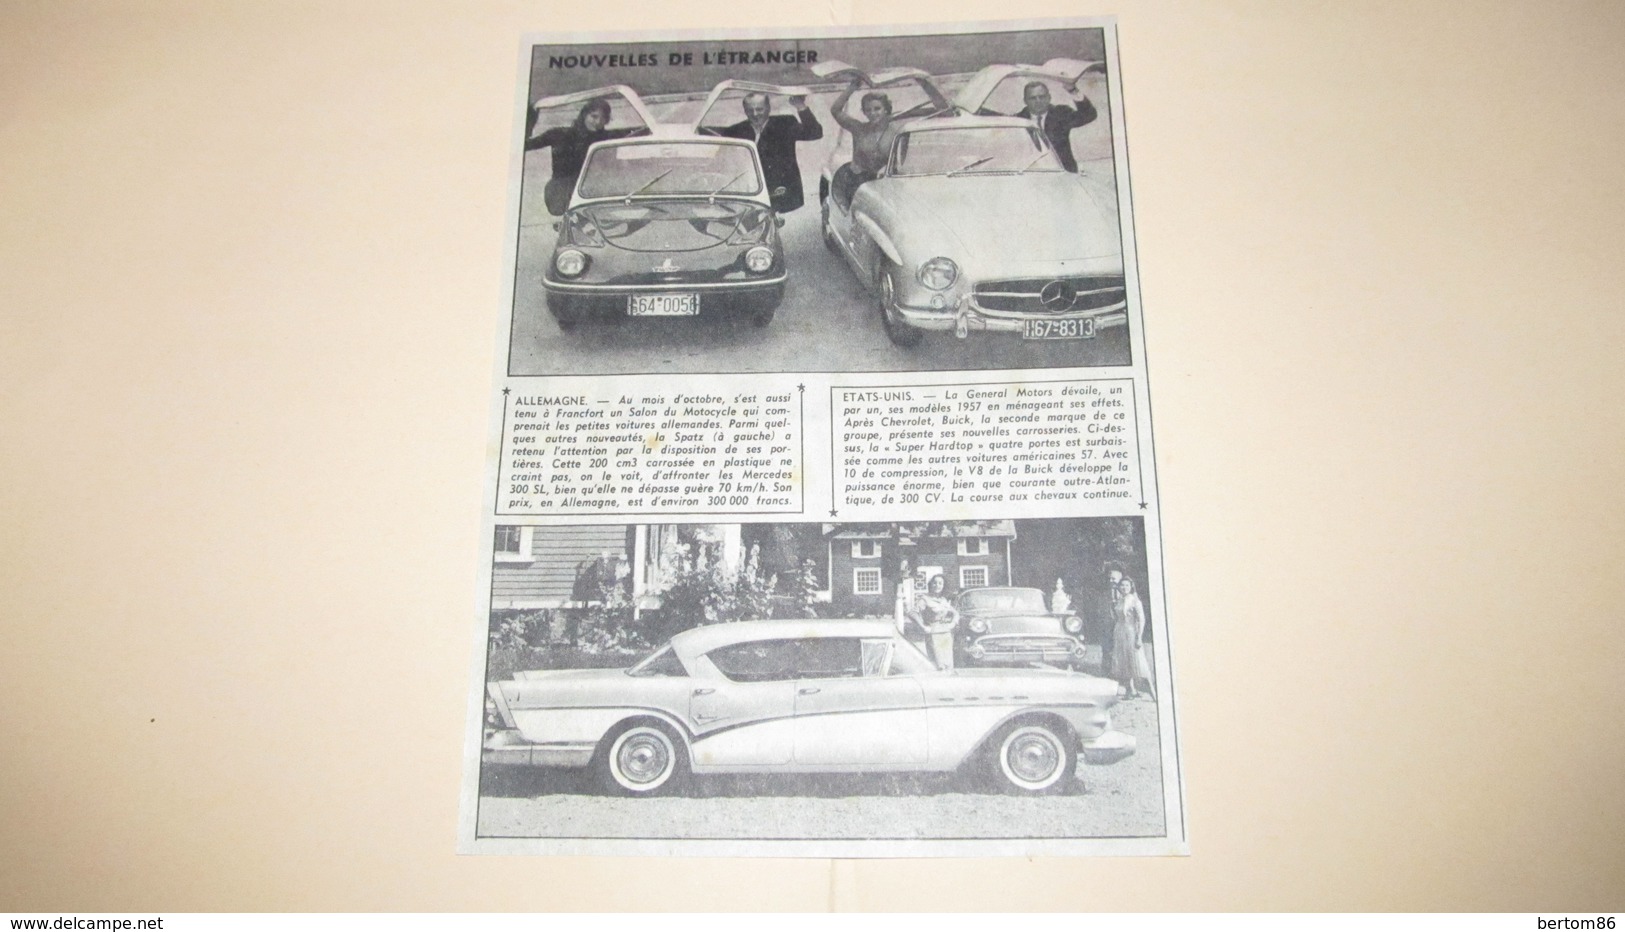 SPATZ COUPE , MERCEDES 300 SL , A PORTES PAPILLONS + SUPER HARDTOP DE G.M. - PUBLICITE / ANNONCE DE 1956. - Publicités